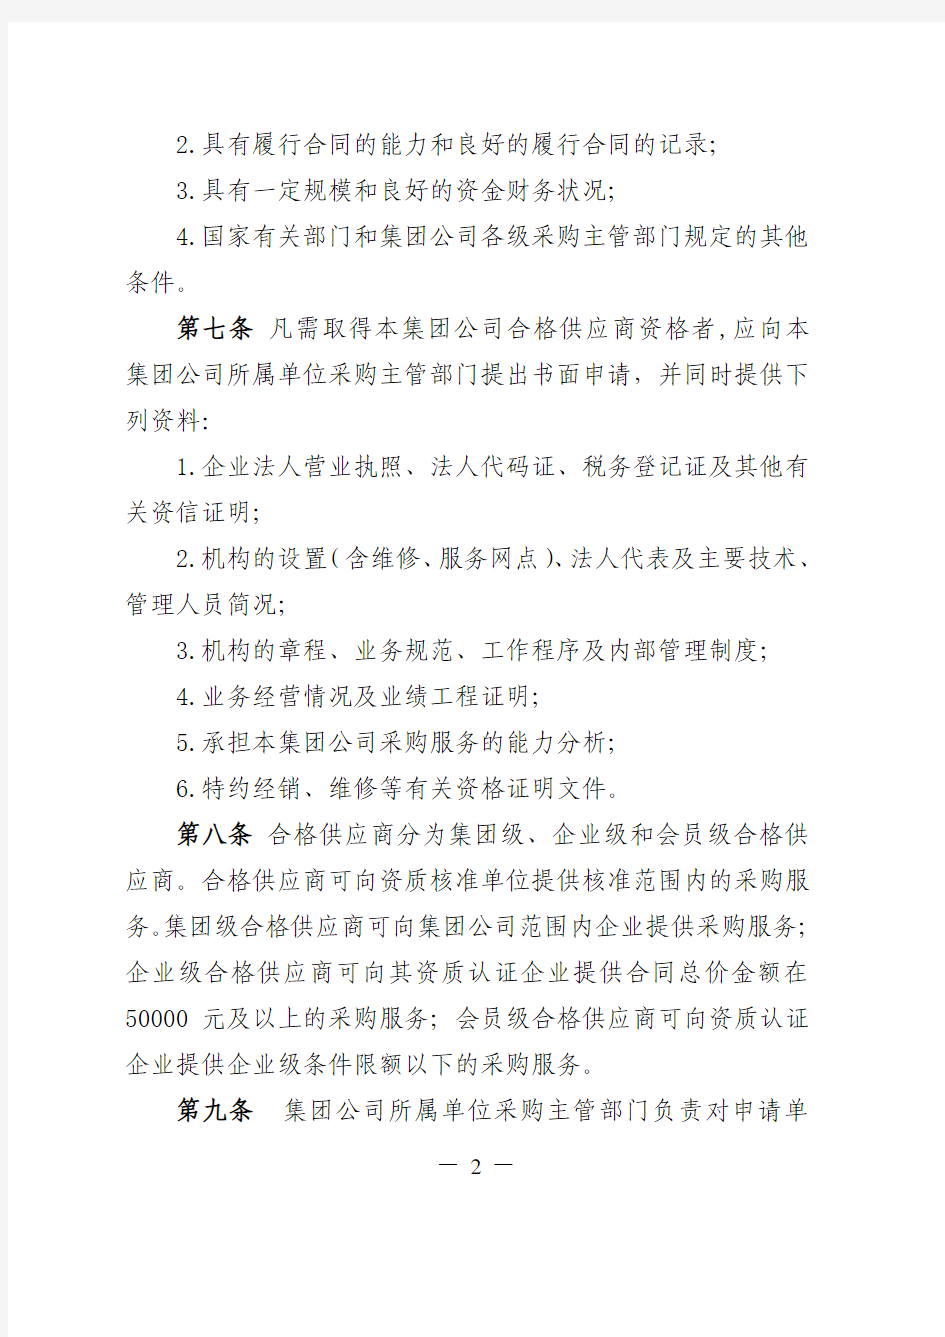 中国国电集团公司采购供应商管理办法(试行)